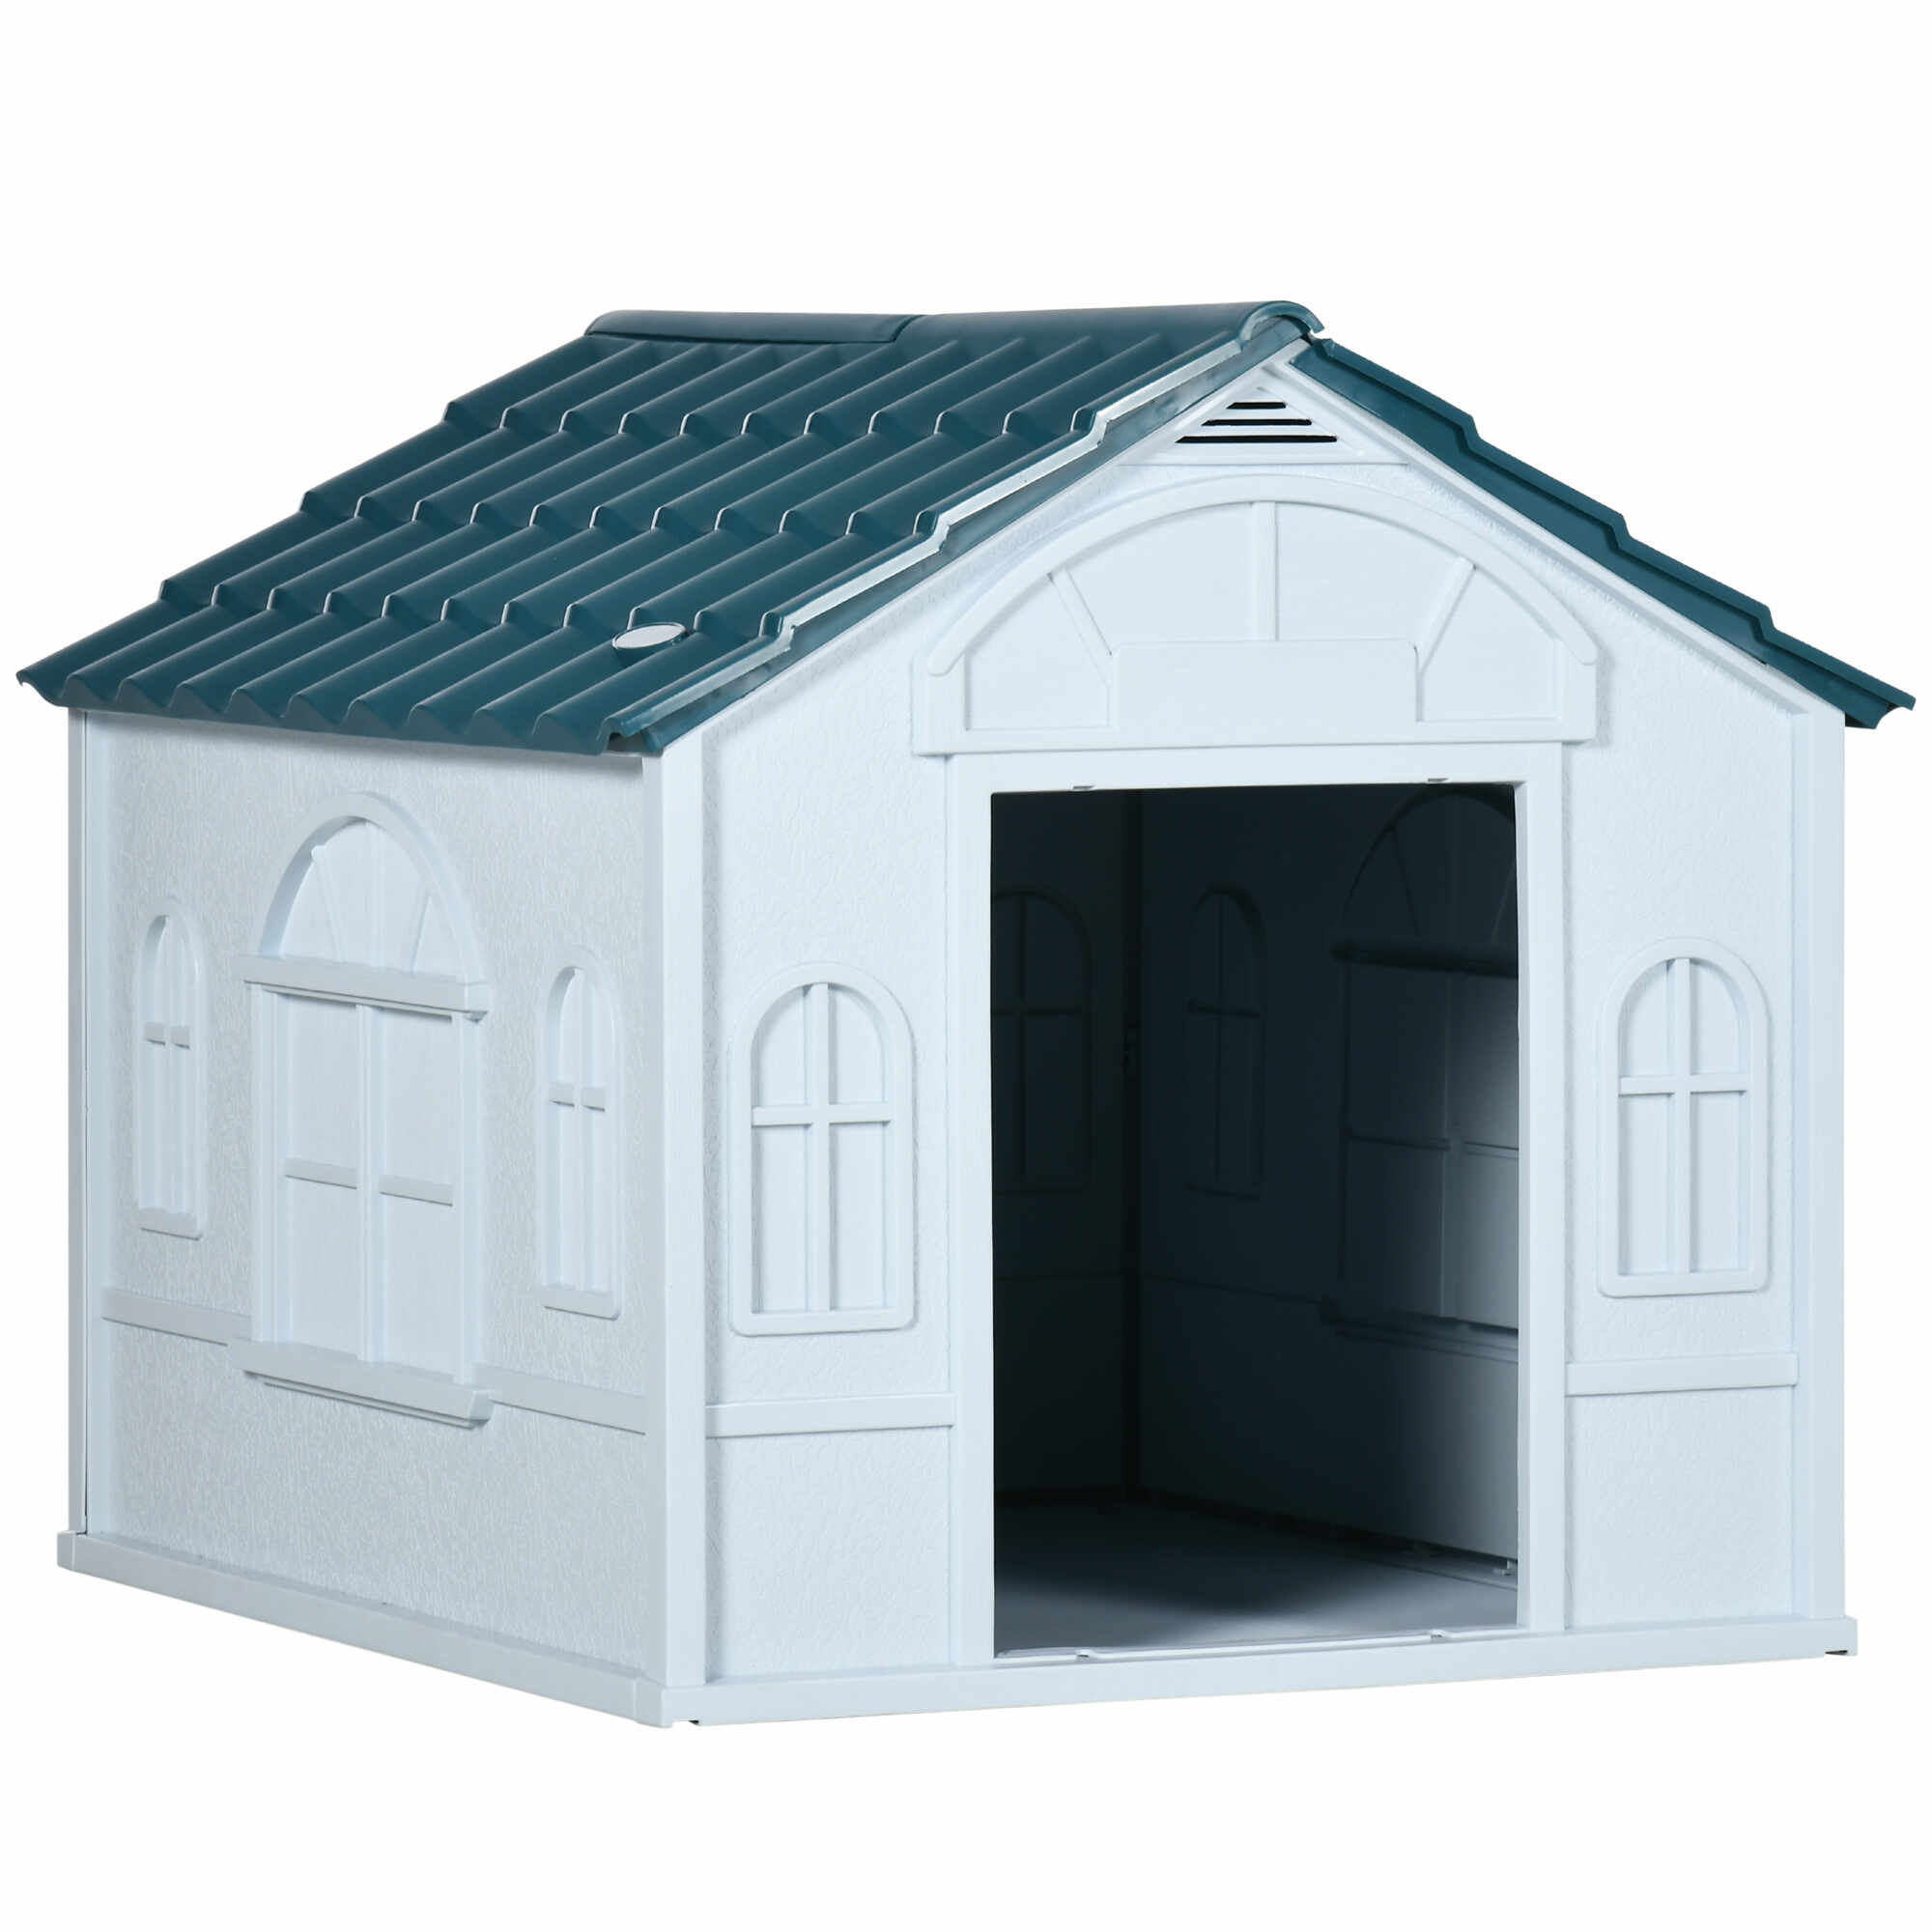 PawHut Casa din plastic pentru caini de talie mare, cu protectie pentru orice vreme, albastru, 65 x 75.7 x 63 cm;